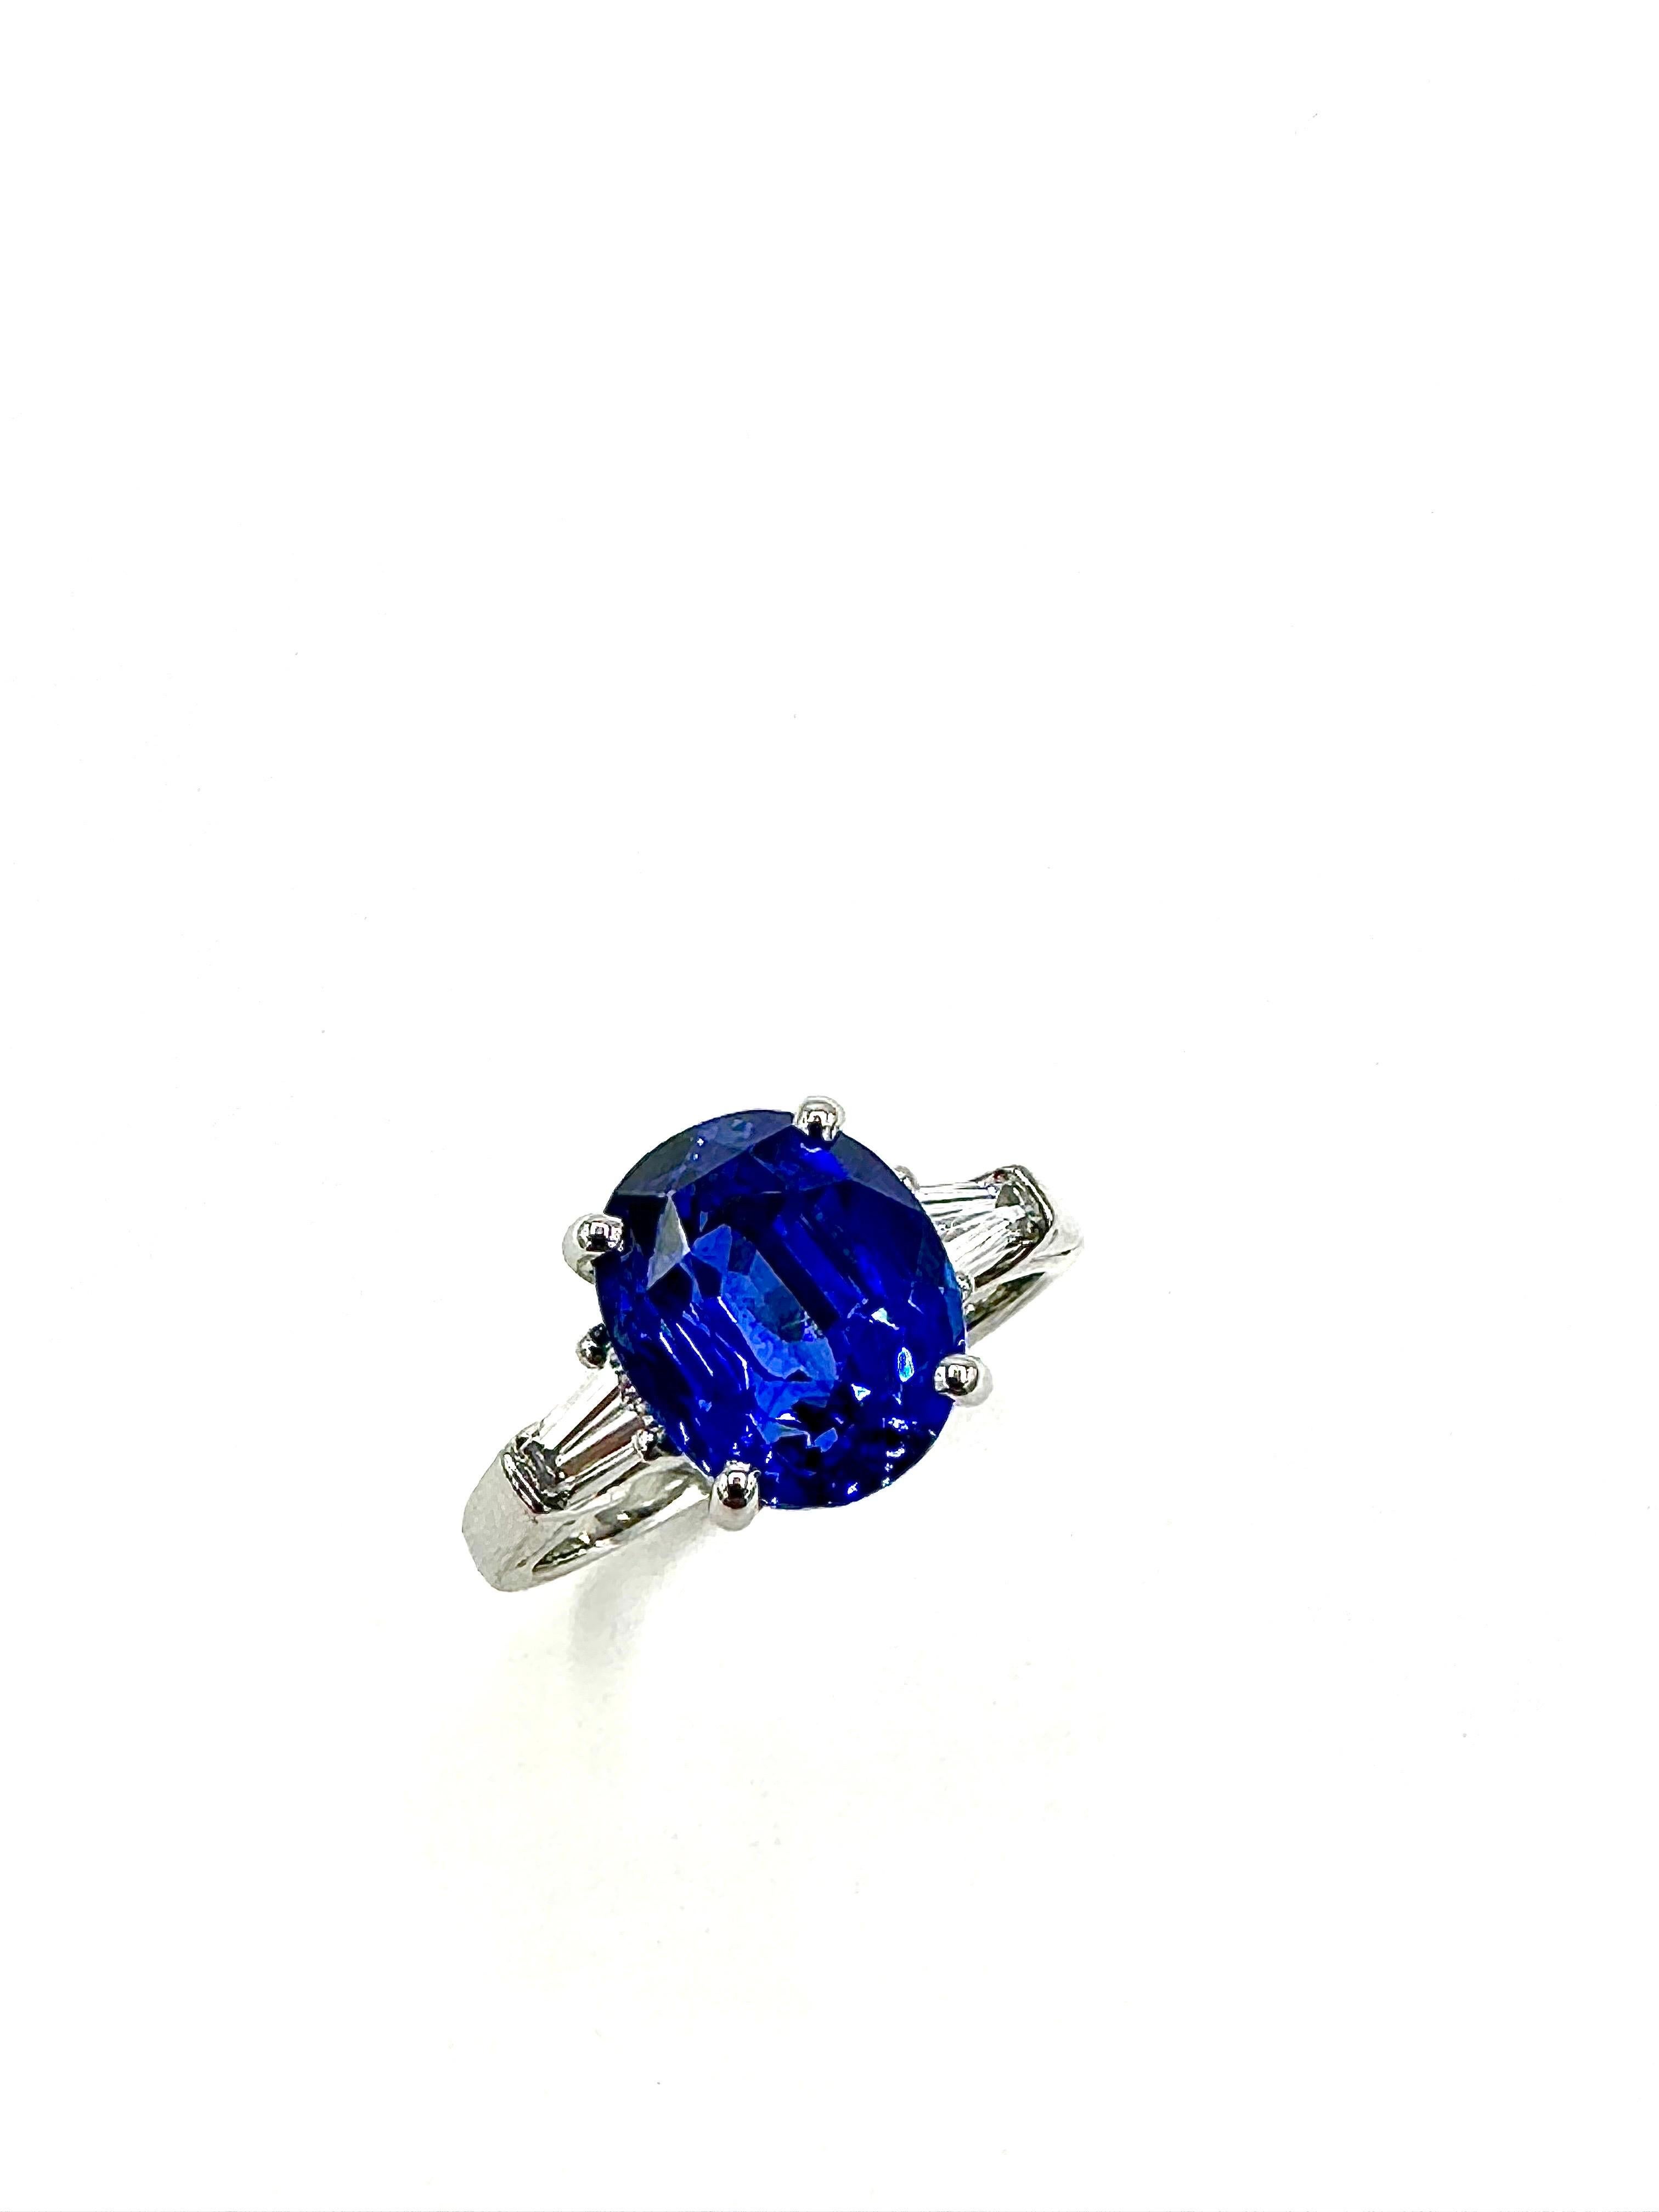 Ein atemberaubender Saphir- und Diamantring von den Designern von Oscar Heyman Brothers.  Der Ring besteht aus einem ovalen Saphir mit 4,82 Karat in der Mitte und einem einzelnen, spitz zulaufenden Baguette-Diamanten mit einem Gesamtgewicht von 0,36